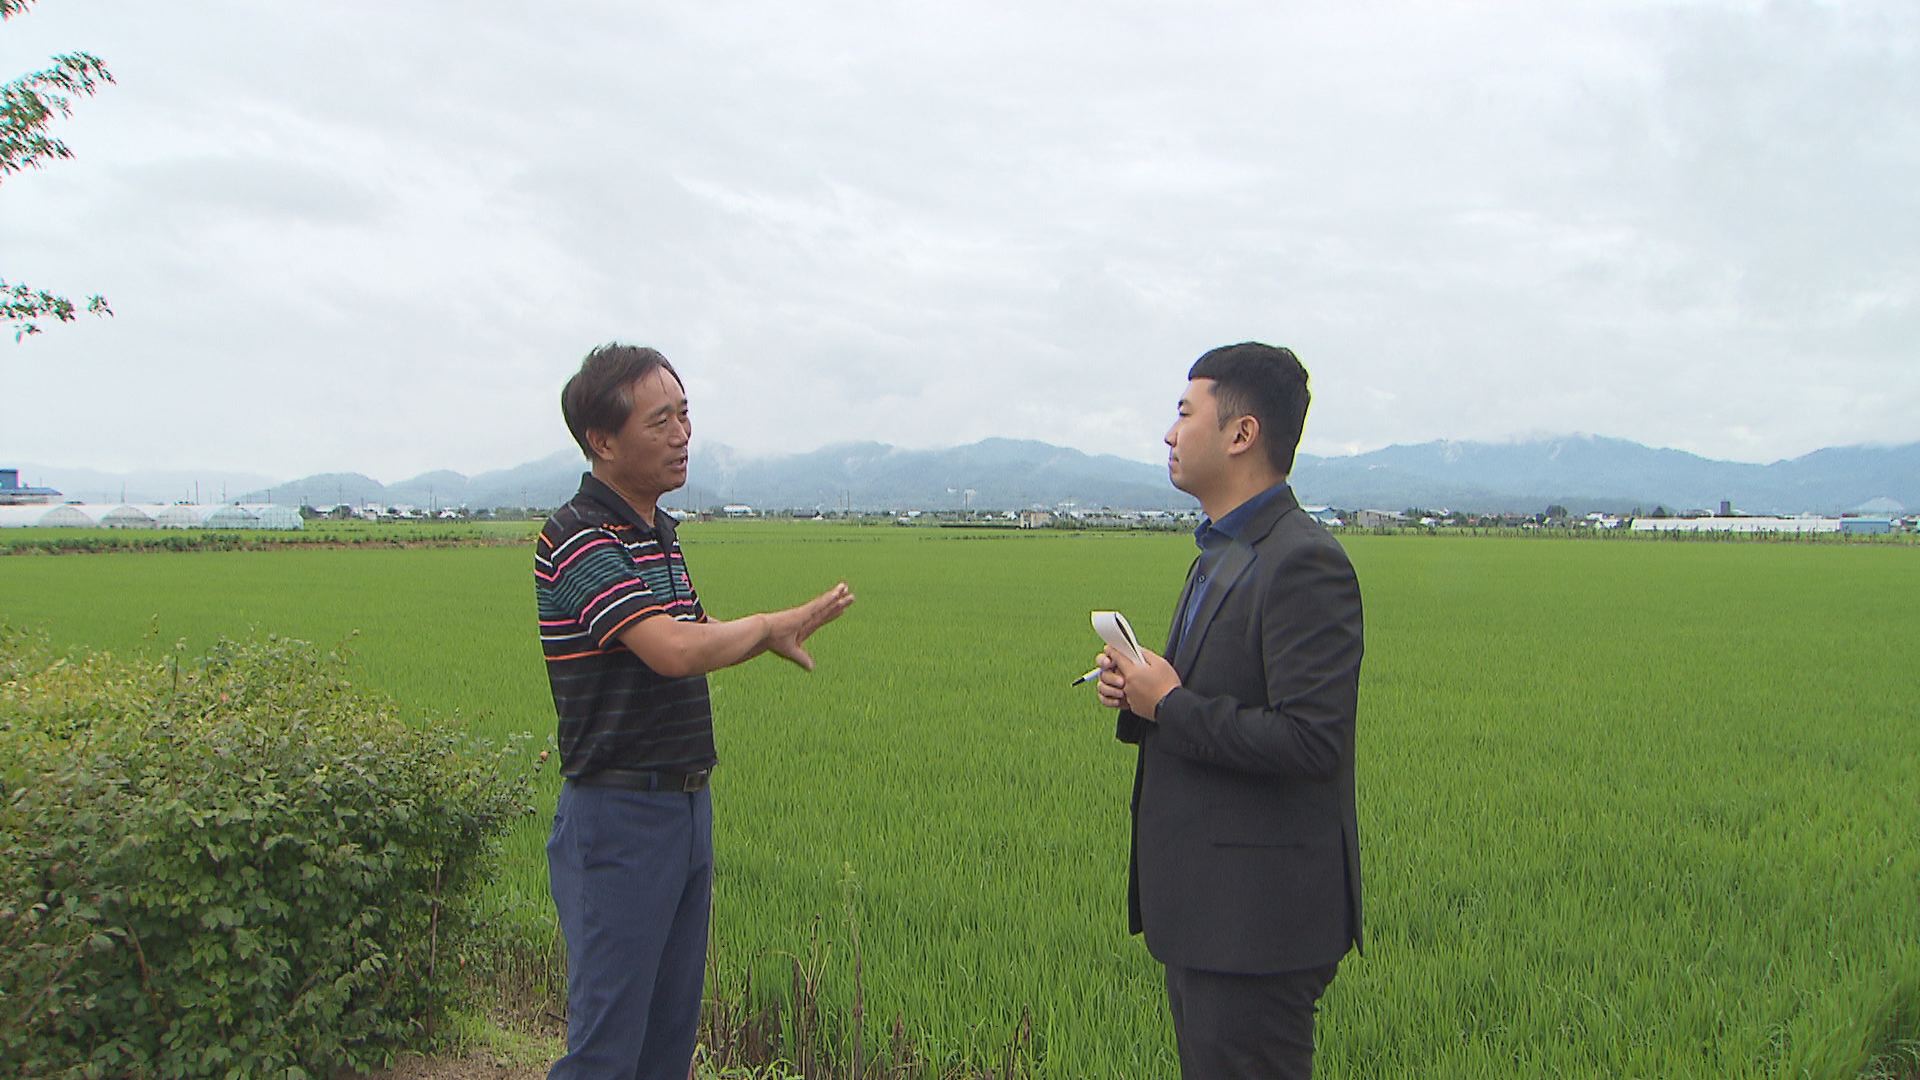 철원에서 쌀 농사를 짓는 유재우 씨는 “쌀값이 계속 떨어지면 올해 수매에도 영향을 줄 수 있어서 걱정이다”라고 말했다.